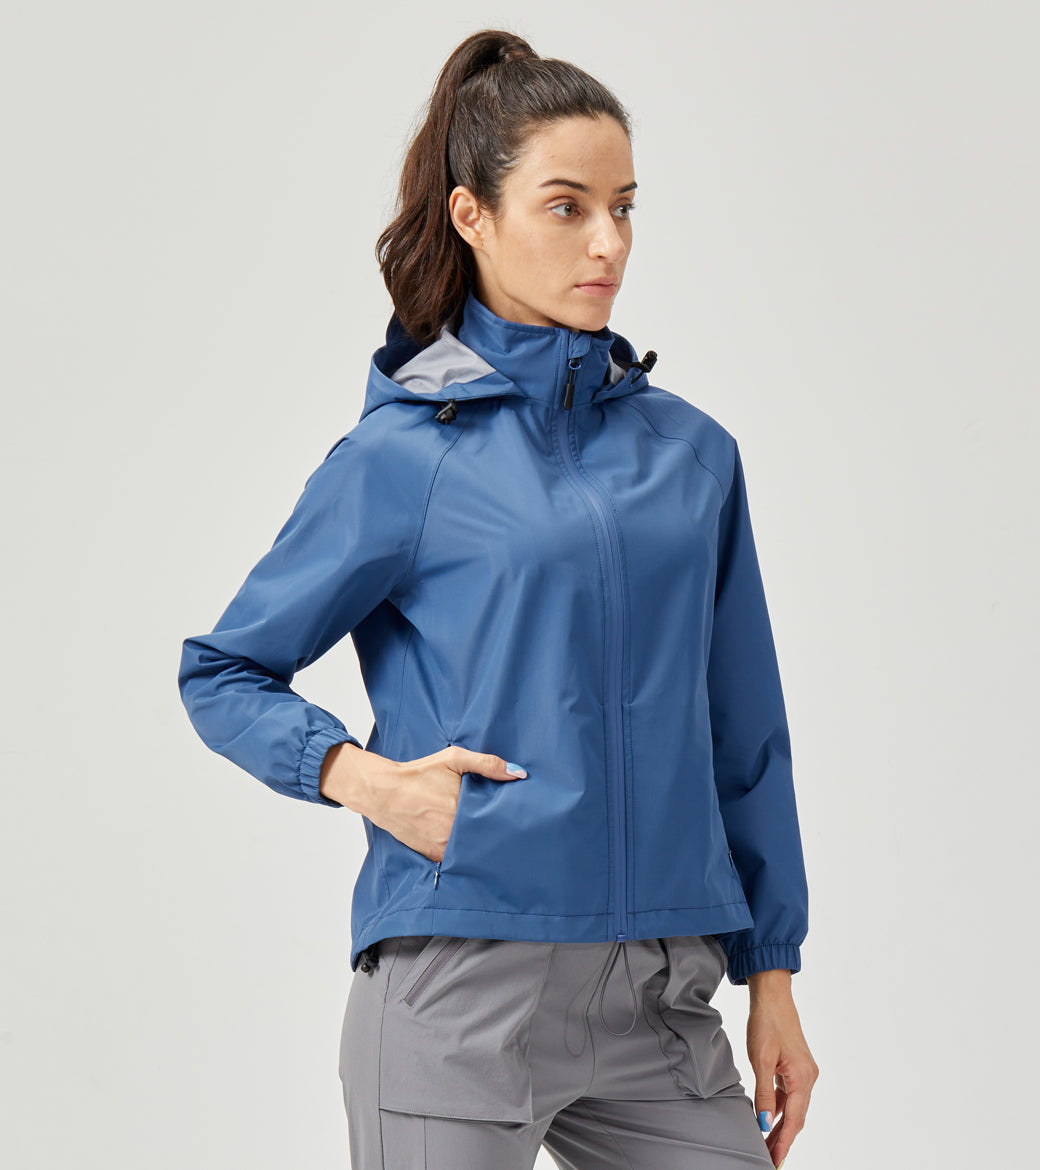 LOVESOFT Women's Blue Outdoor Jacket Waterproof Windproof Warm Jacket